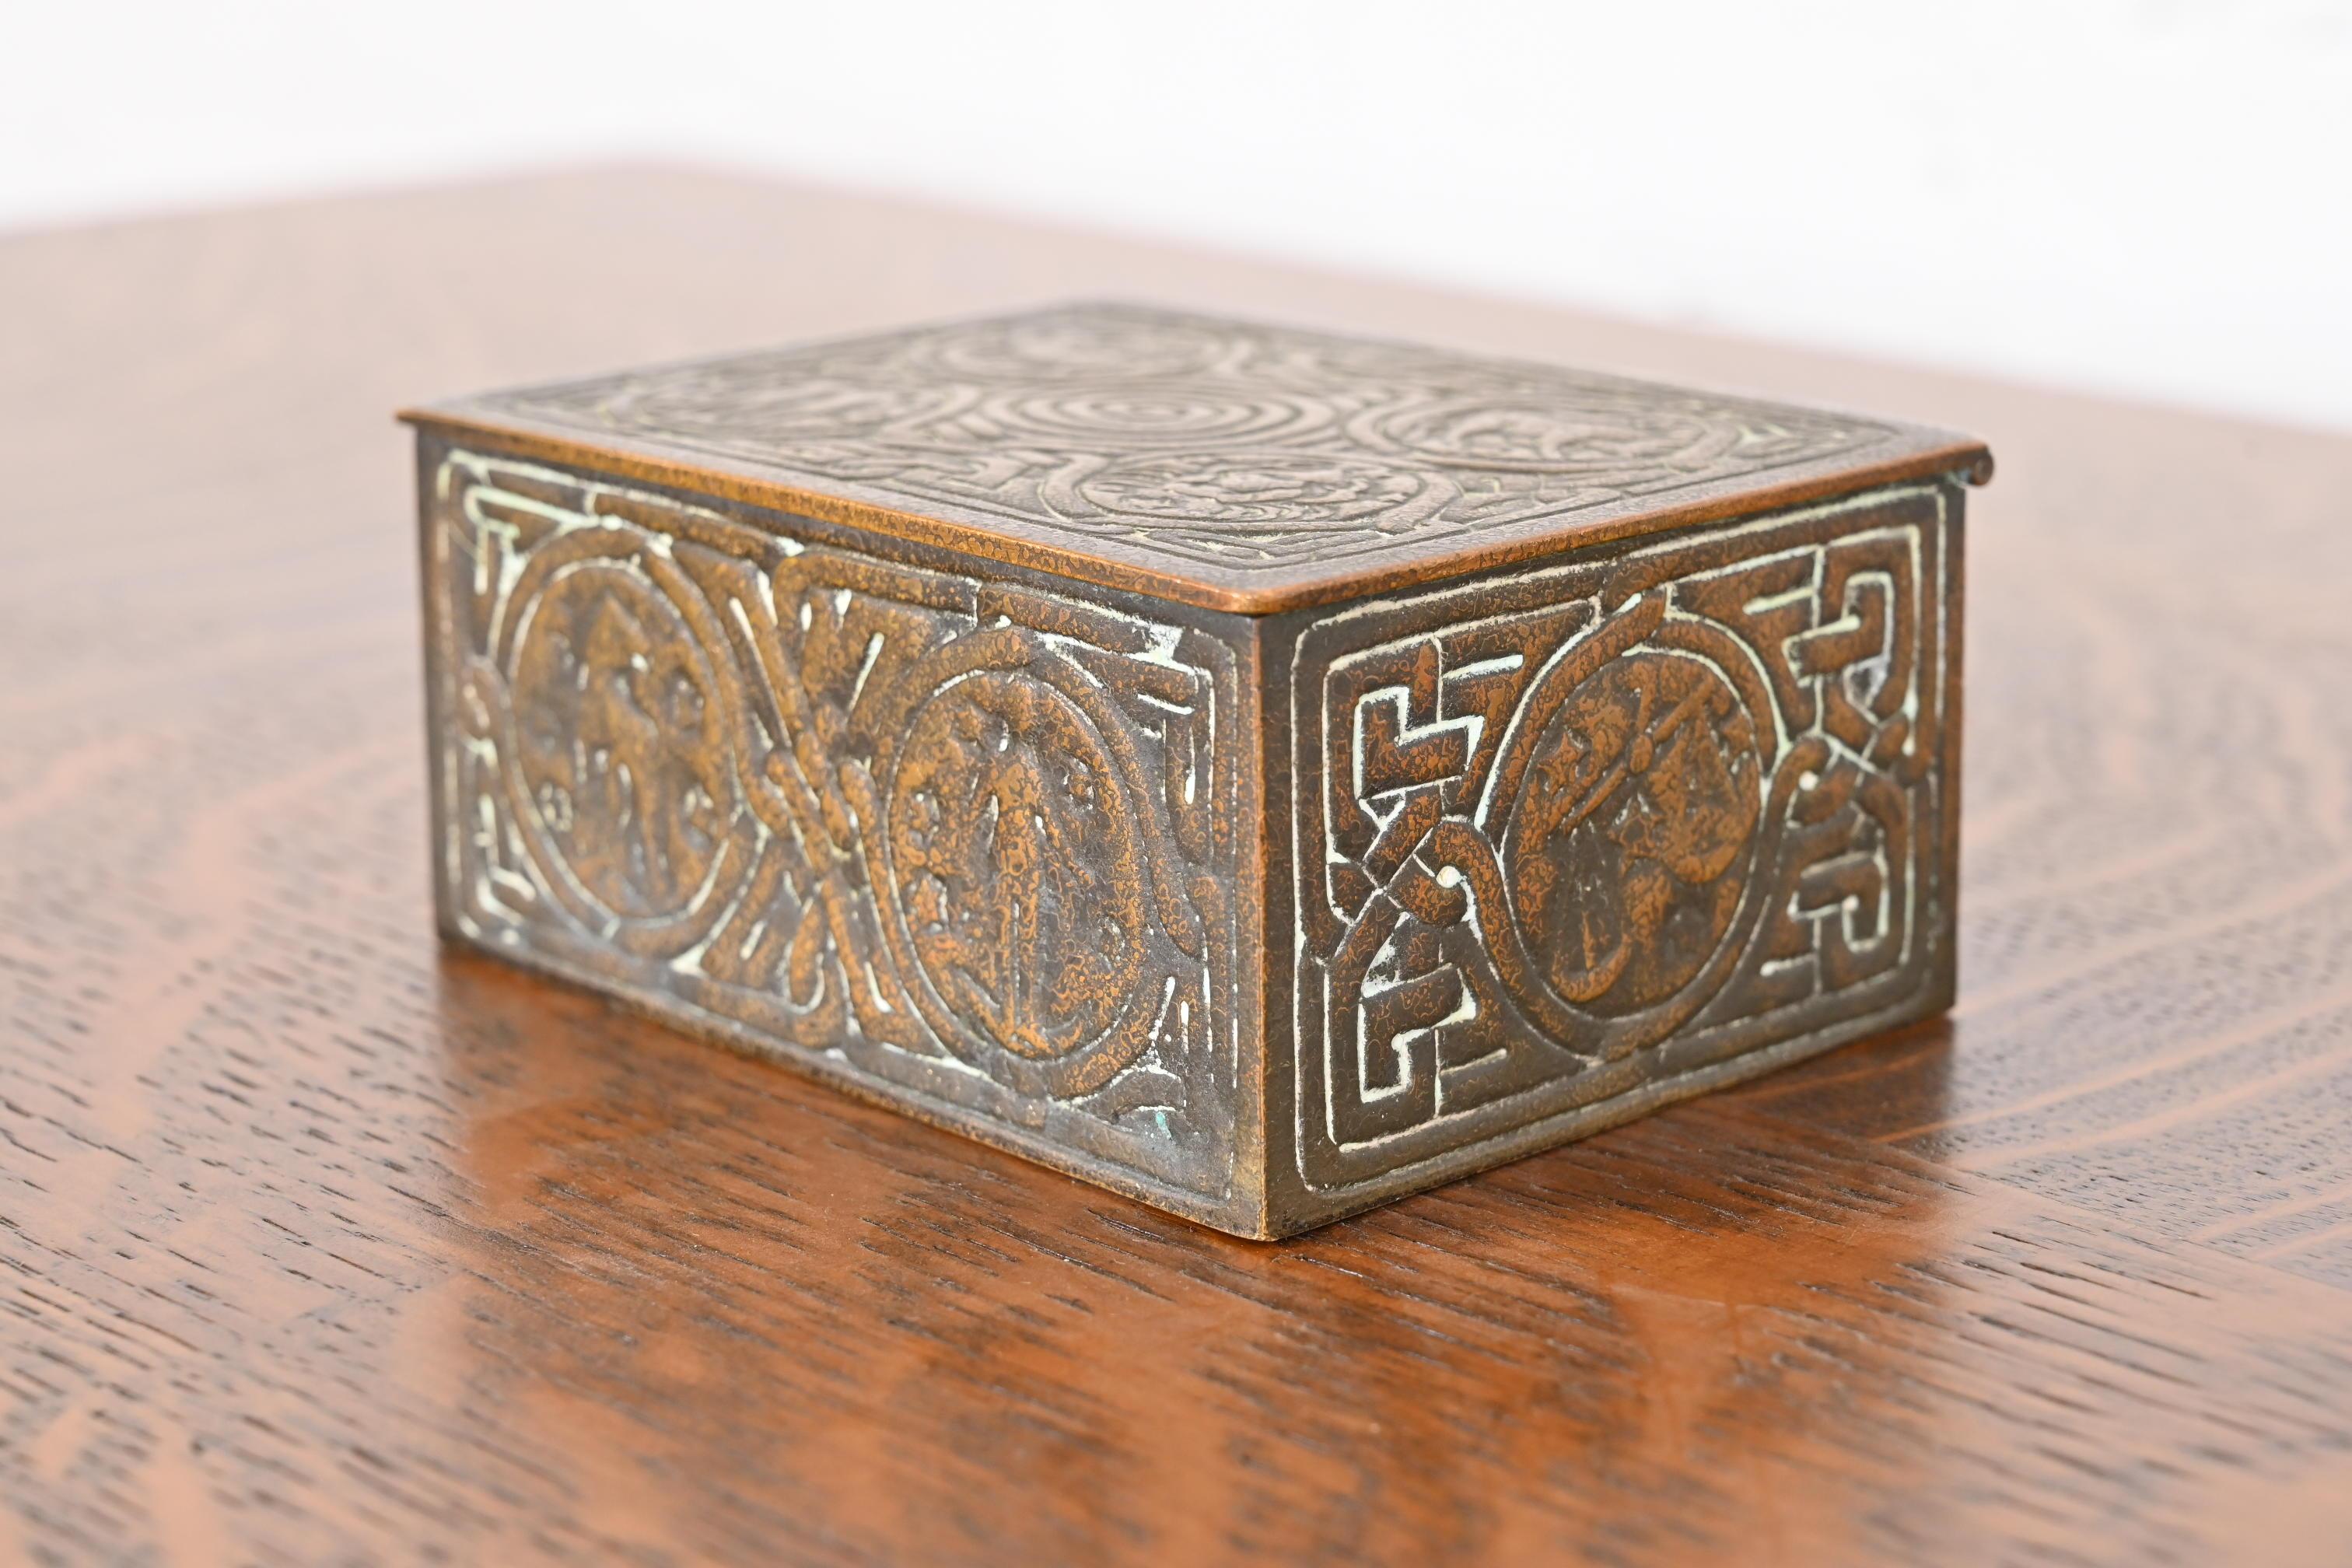 Une magnifique boîte de bureau, boîte à bijoux ou boîte décorative en bronze avec des motifs du Zodiac.

Par Tiffany Studios

New York, États-Unis, Début du XXe siècle

Dimensions : 4,5 